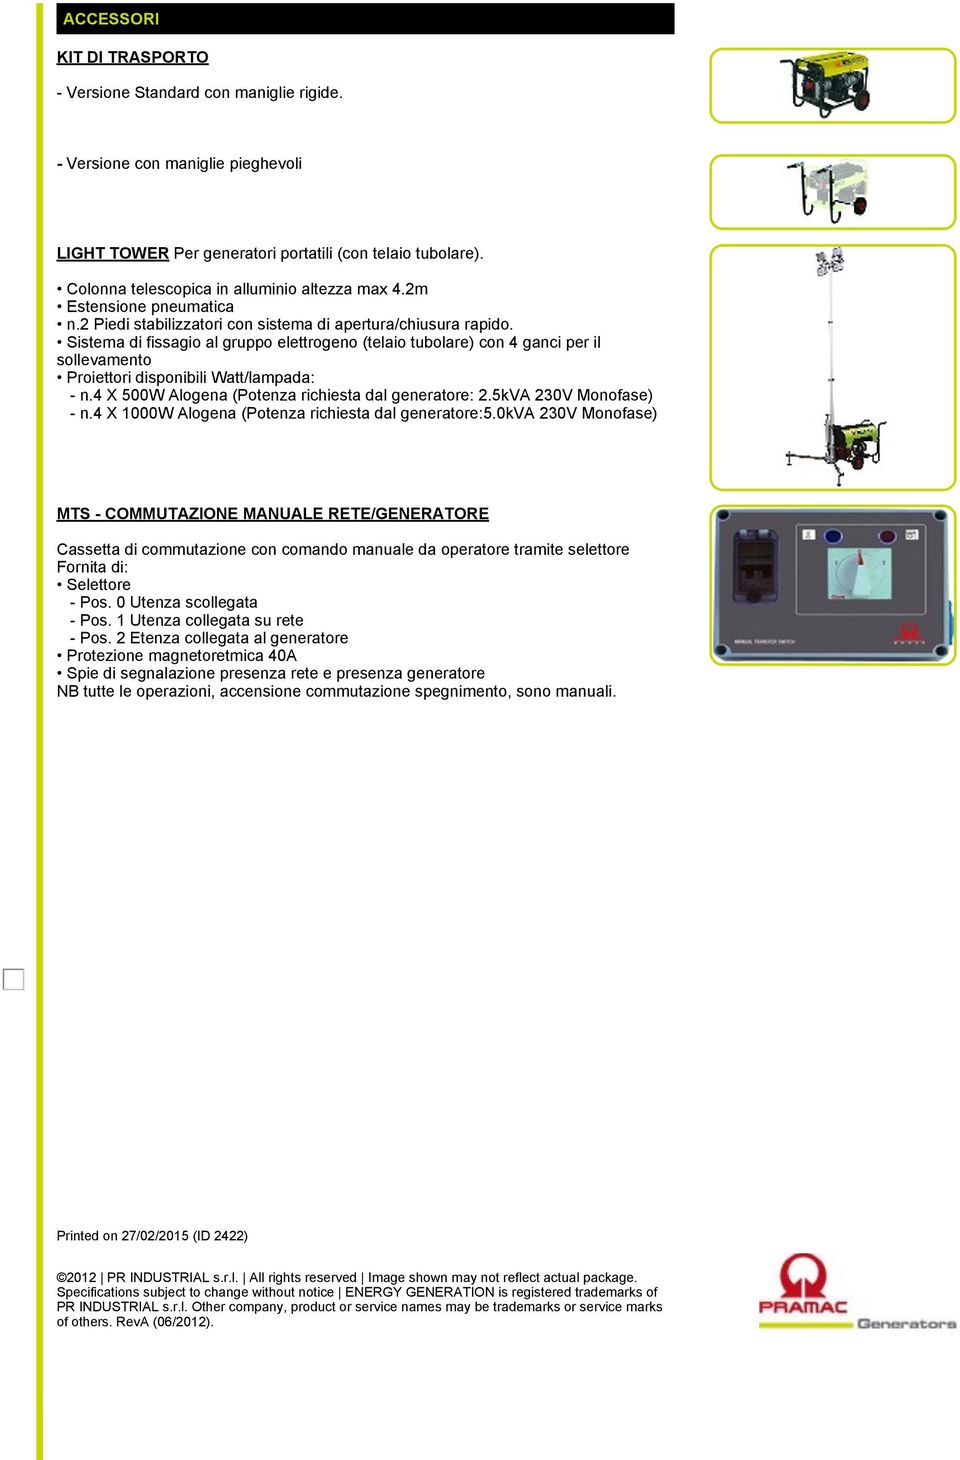 Sistema di fissagio al gruppo elettrogeno (telaio tubolare) con 4 ganci per il sollevamento Proiettori disponibili Watt/lampada: - n.4 X 500W Alogena (Potenza richiesta dal generatore: 2.